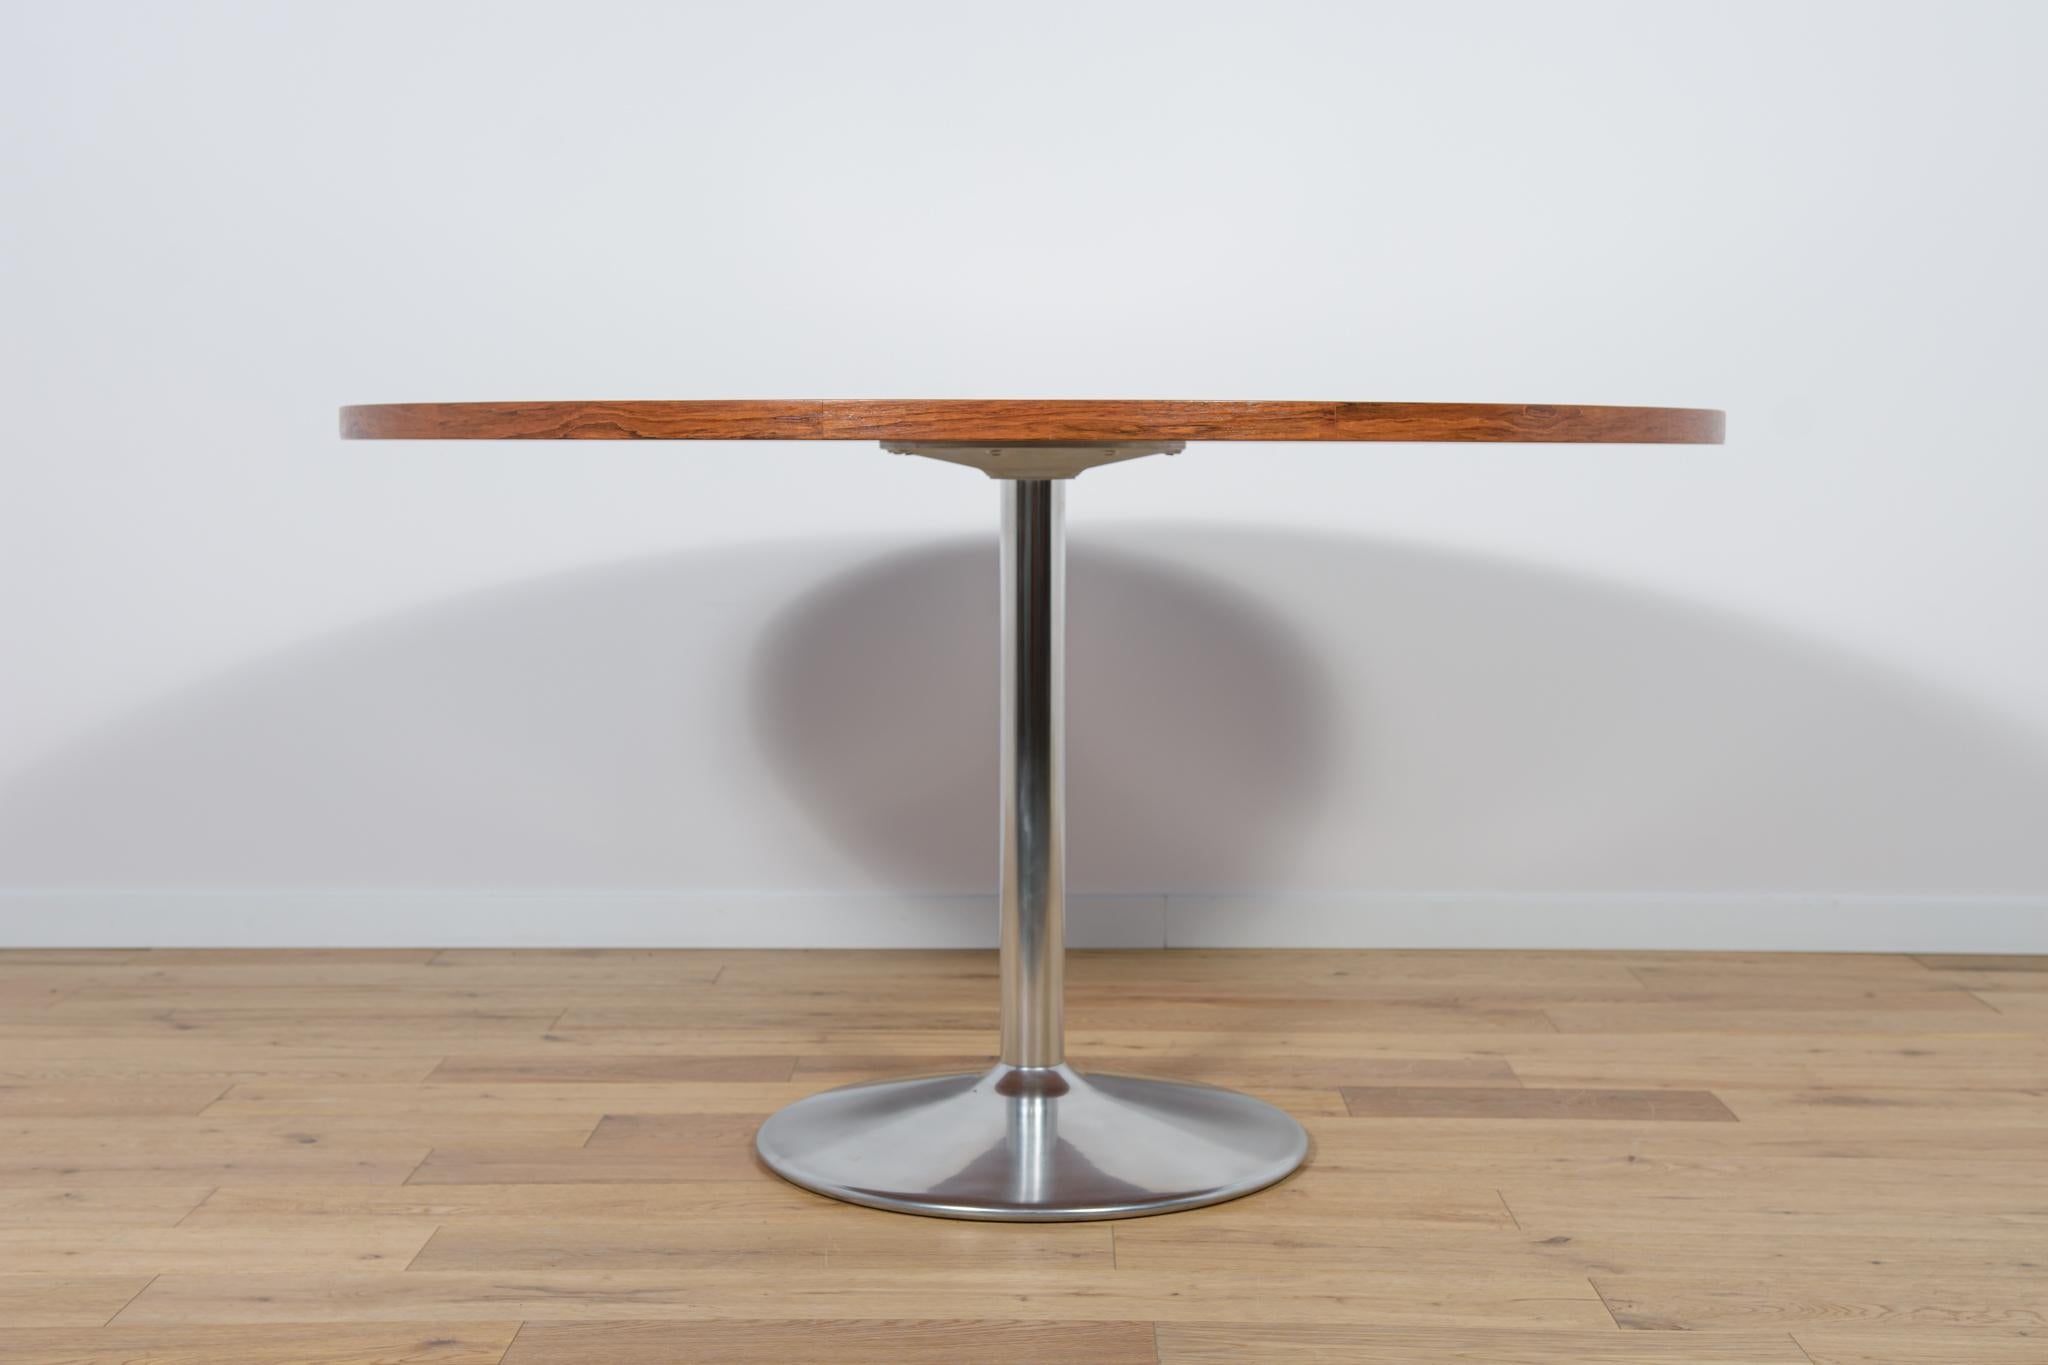 Der Tisch wurde in den 1970er Jahren in Dänemark hergestellt. Tischplatte aus Jatobe-Furnier. Die Möbel sind nach einer umfassenden Tischlerrenovierung von der alten Beschichtung befreit und mit hochwertigem dänischem Öl behandelt worden. Der